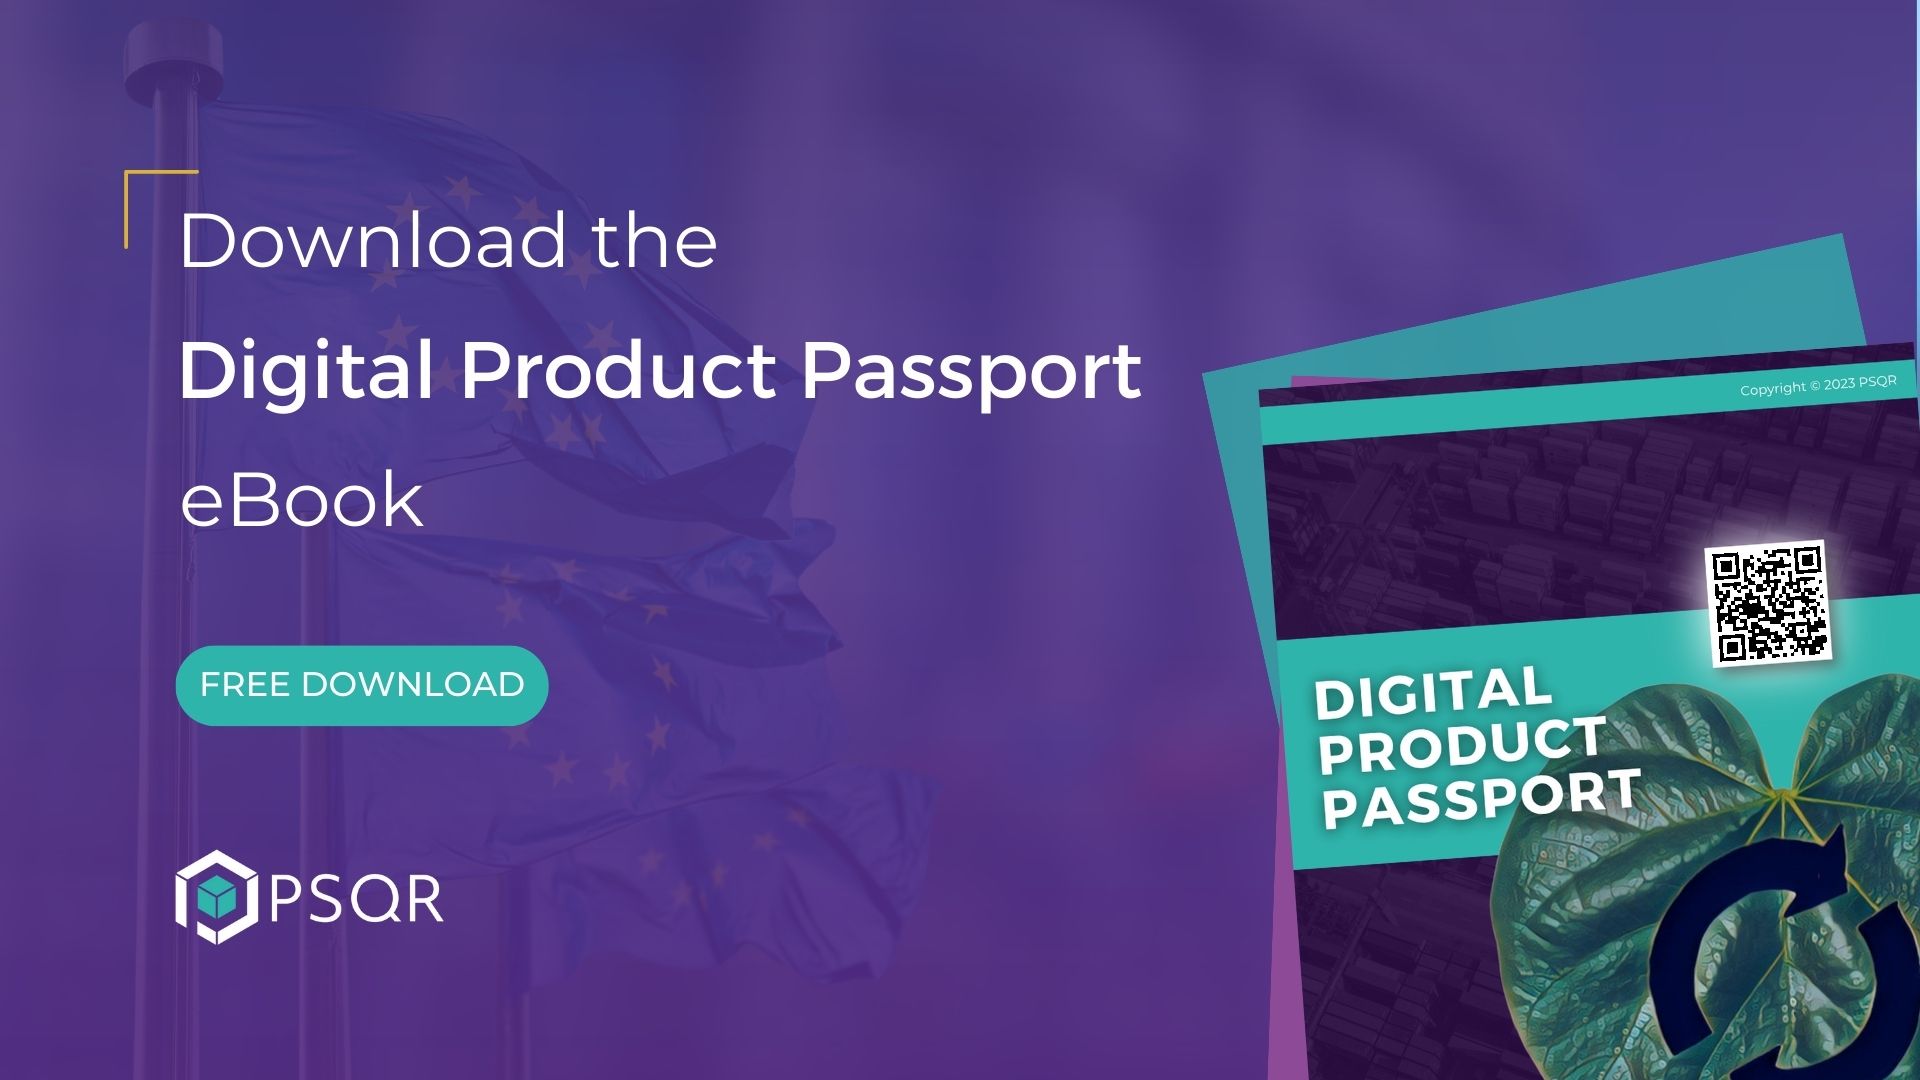 Digital Product Passport ebook download